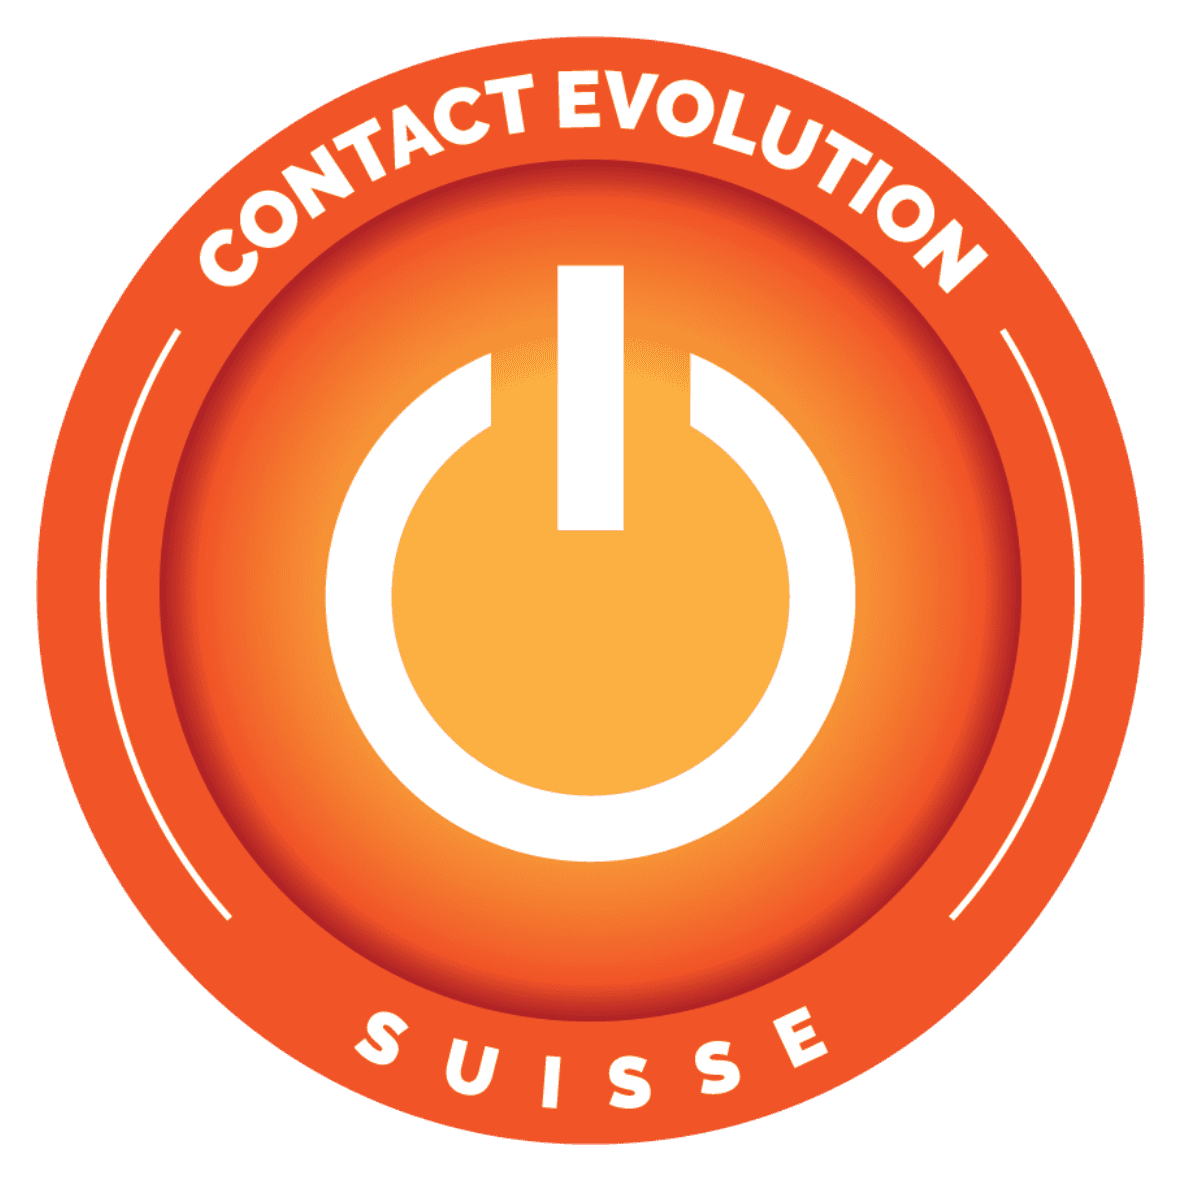 Contact Evolution SA